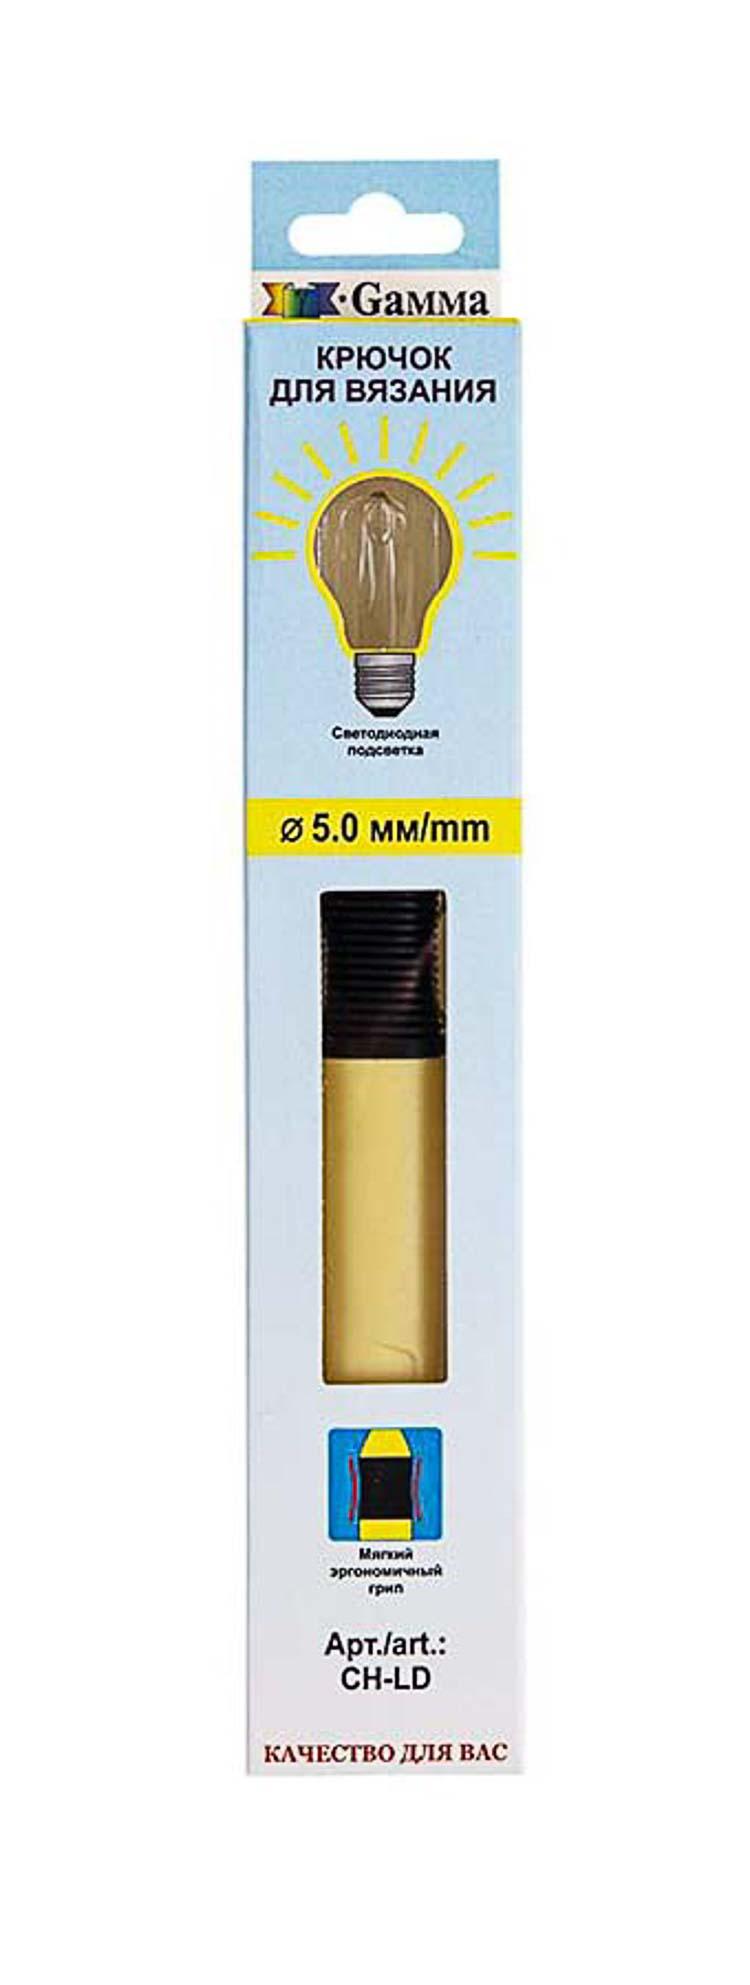 Для вязания Gamma CH-LD крючок с подсветкой пластик d 5.0 мм 15.6 см в картонной упаковке с европодвесом